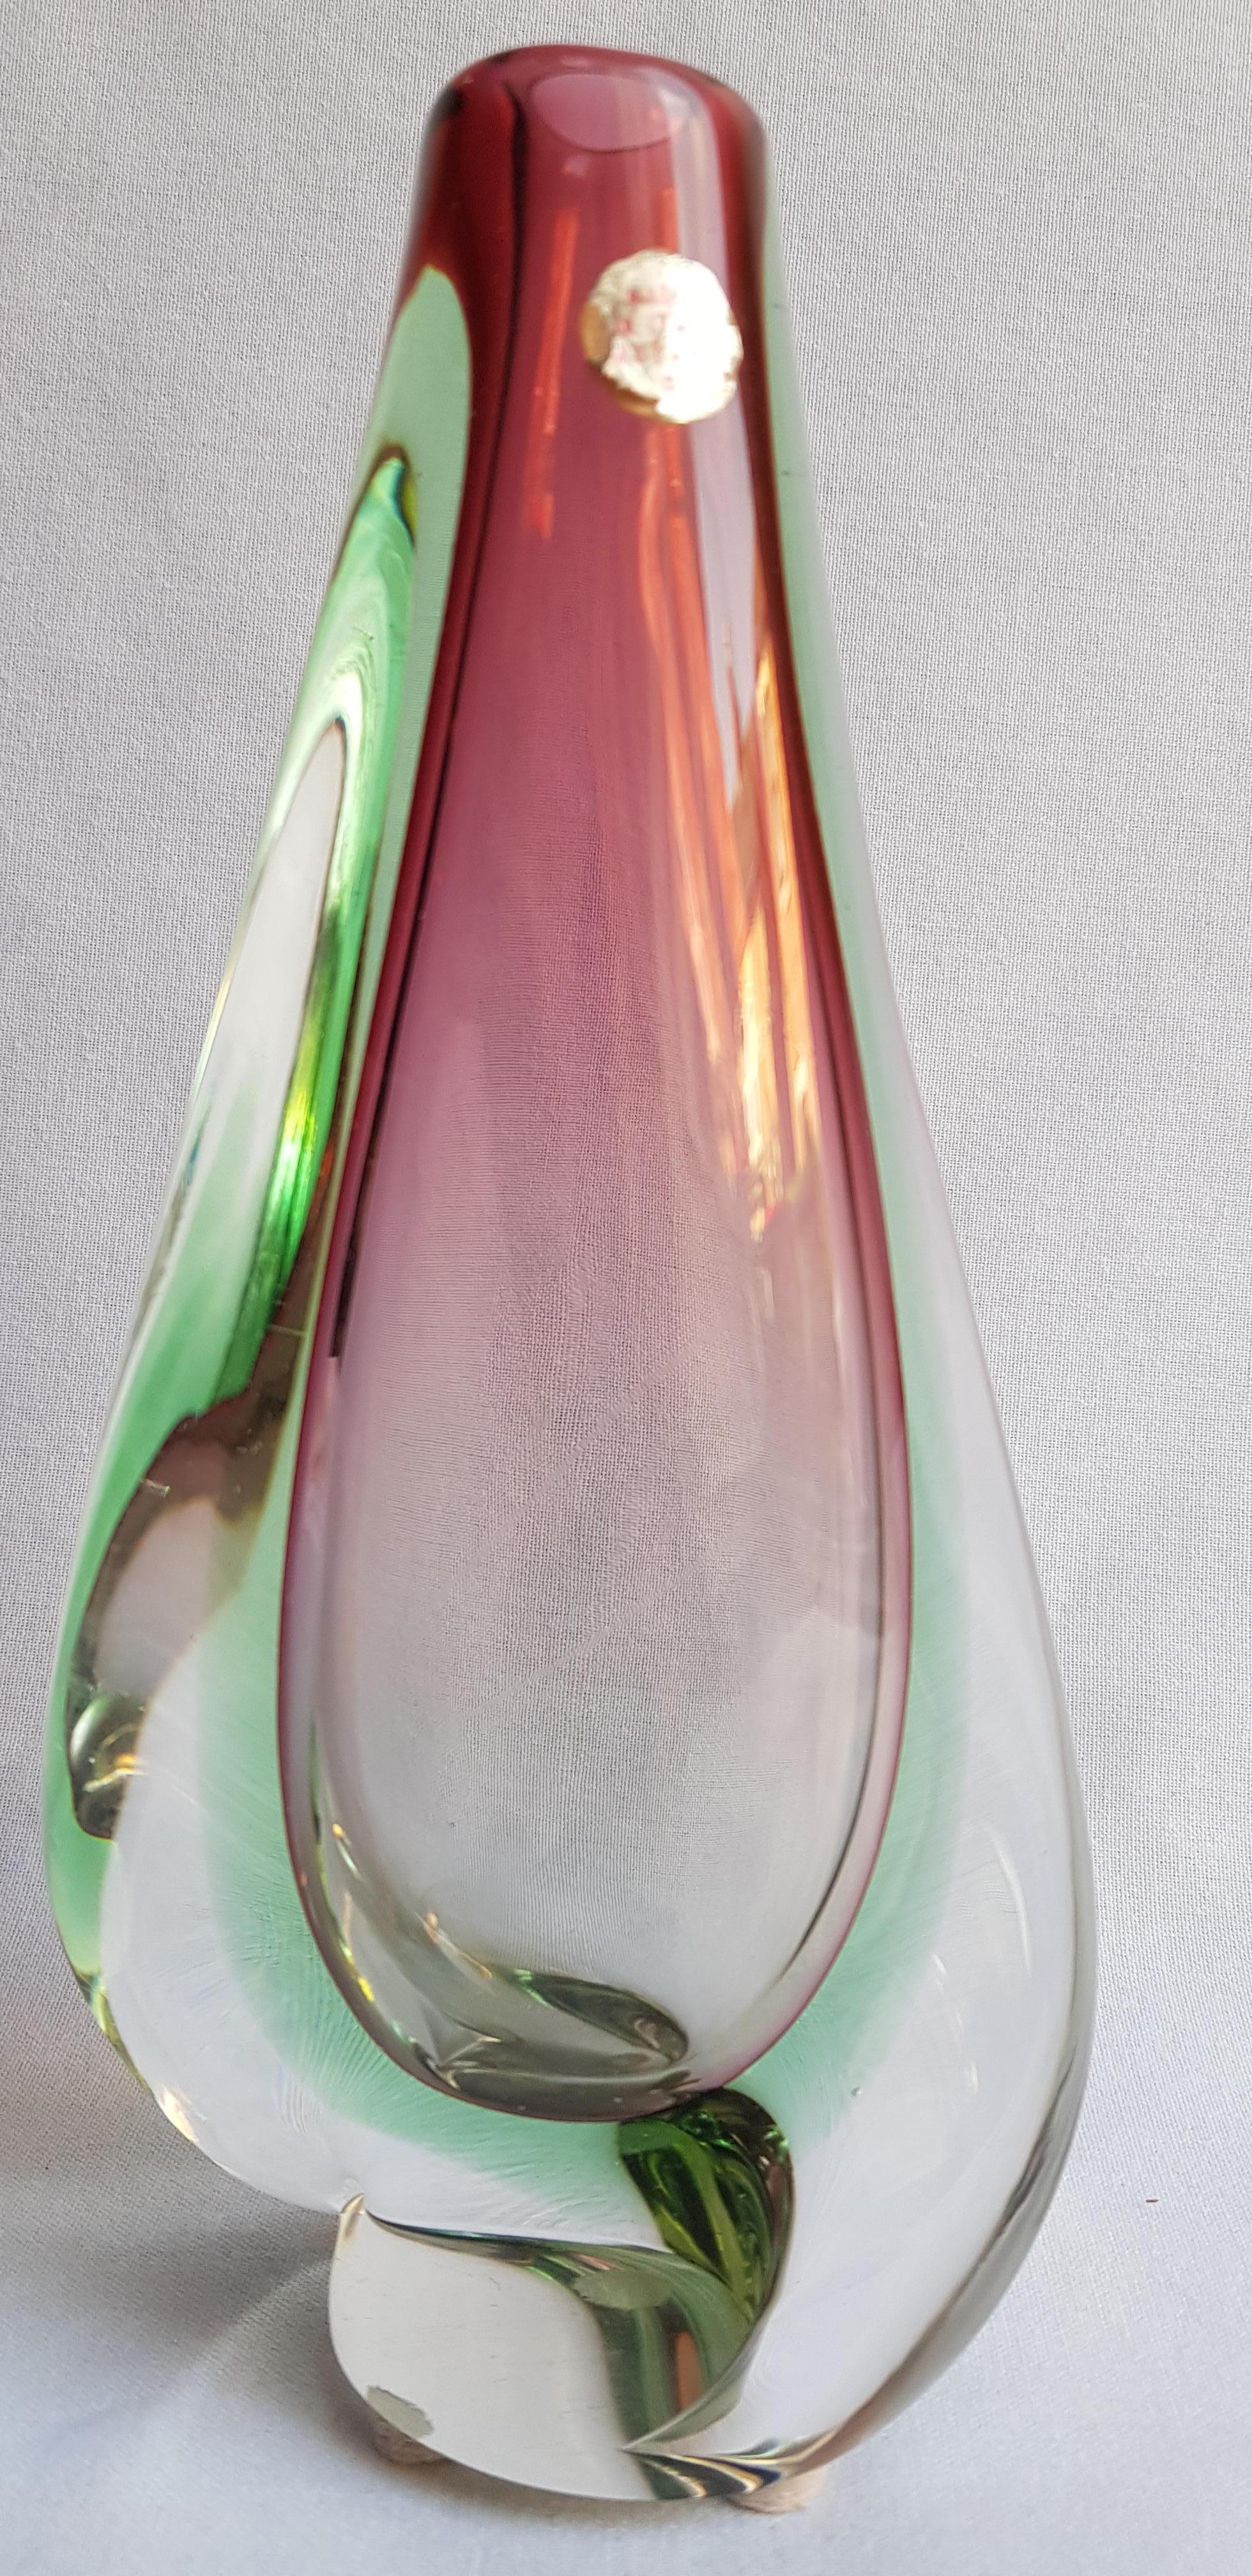 Beautiful vitange Seguso vetri D'arte murano glass somerso vase, by Flavio Poli, purple, green and clear brilliant condition.